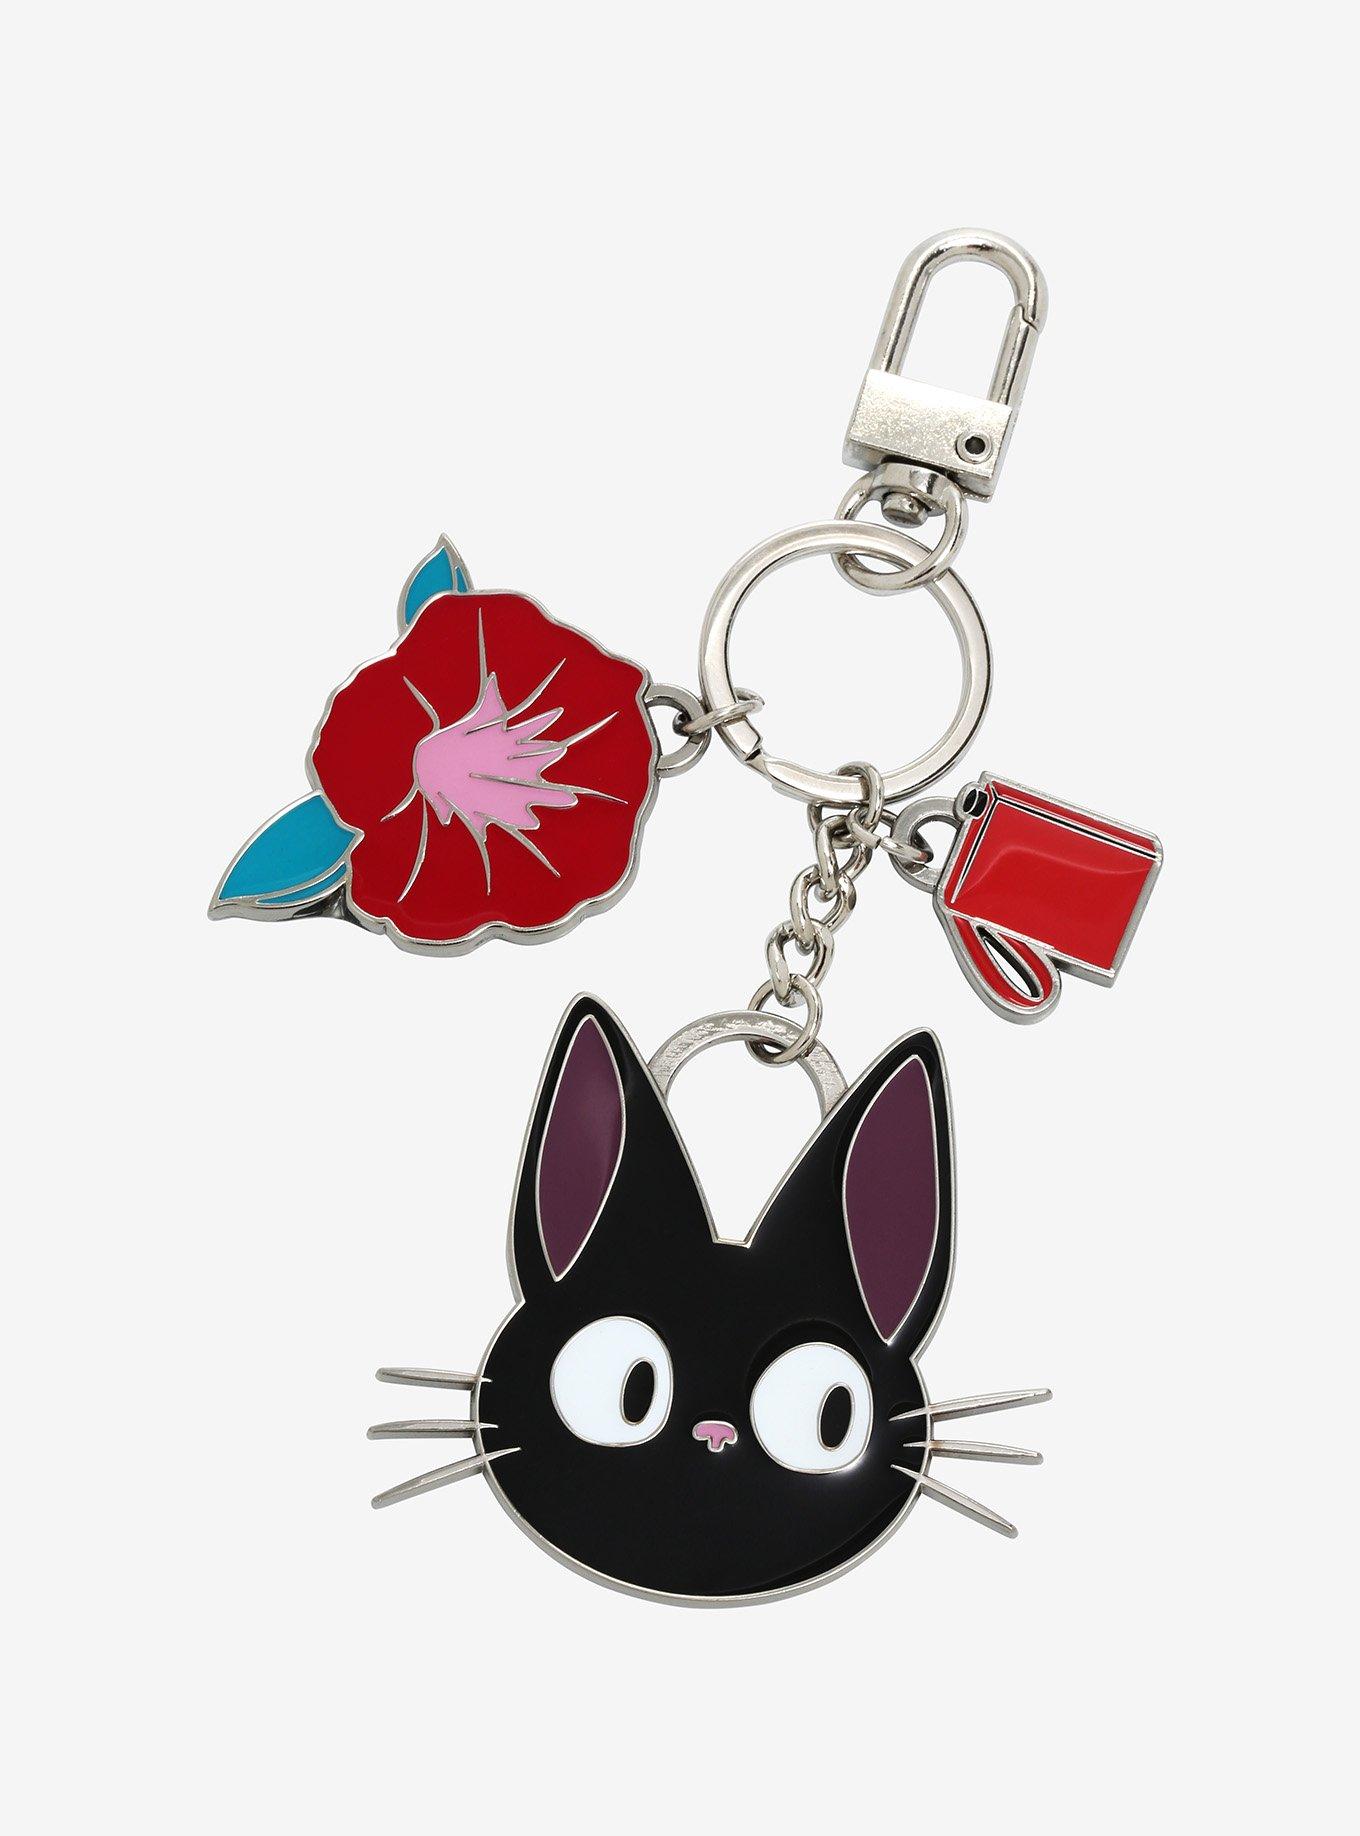 Studio Ghibli Kiki's Delivery Service Bow Tombo Mini Backpack Keychain  Charm NEW